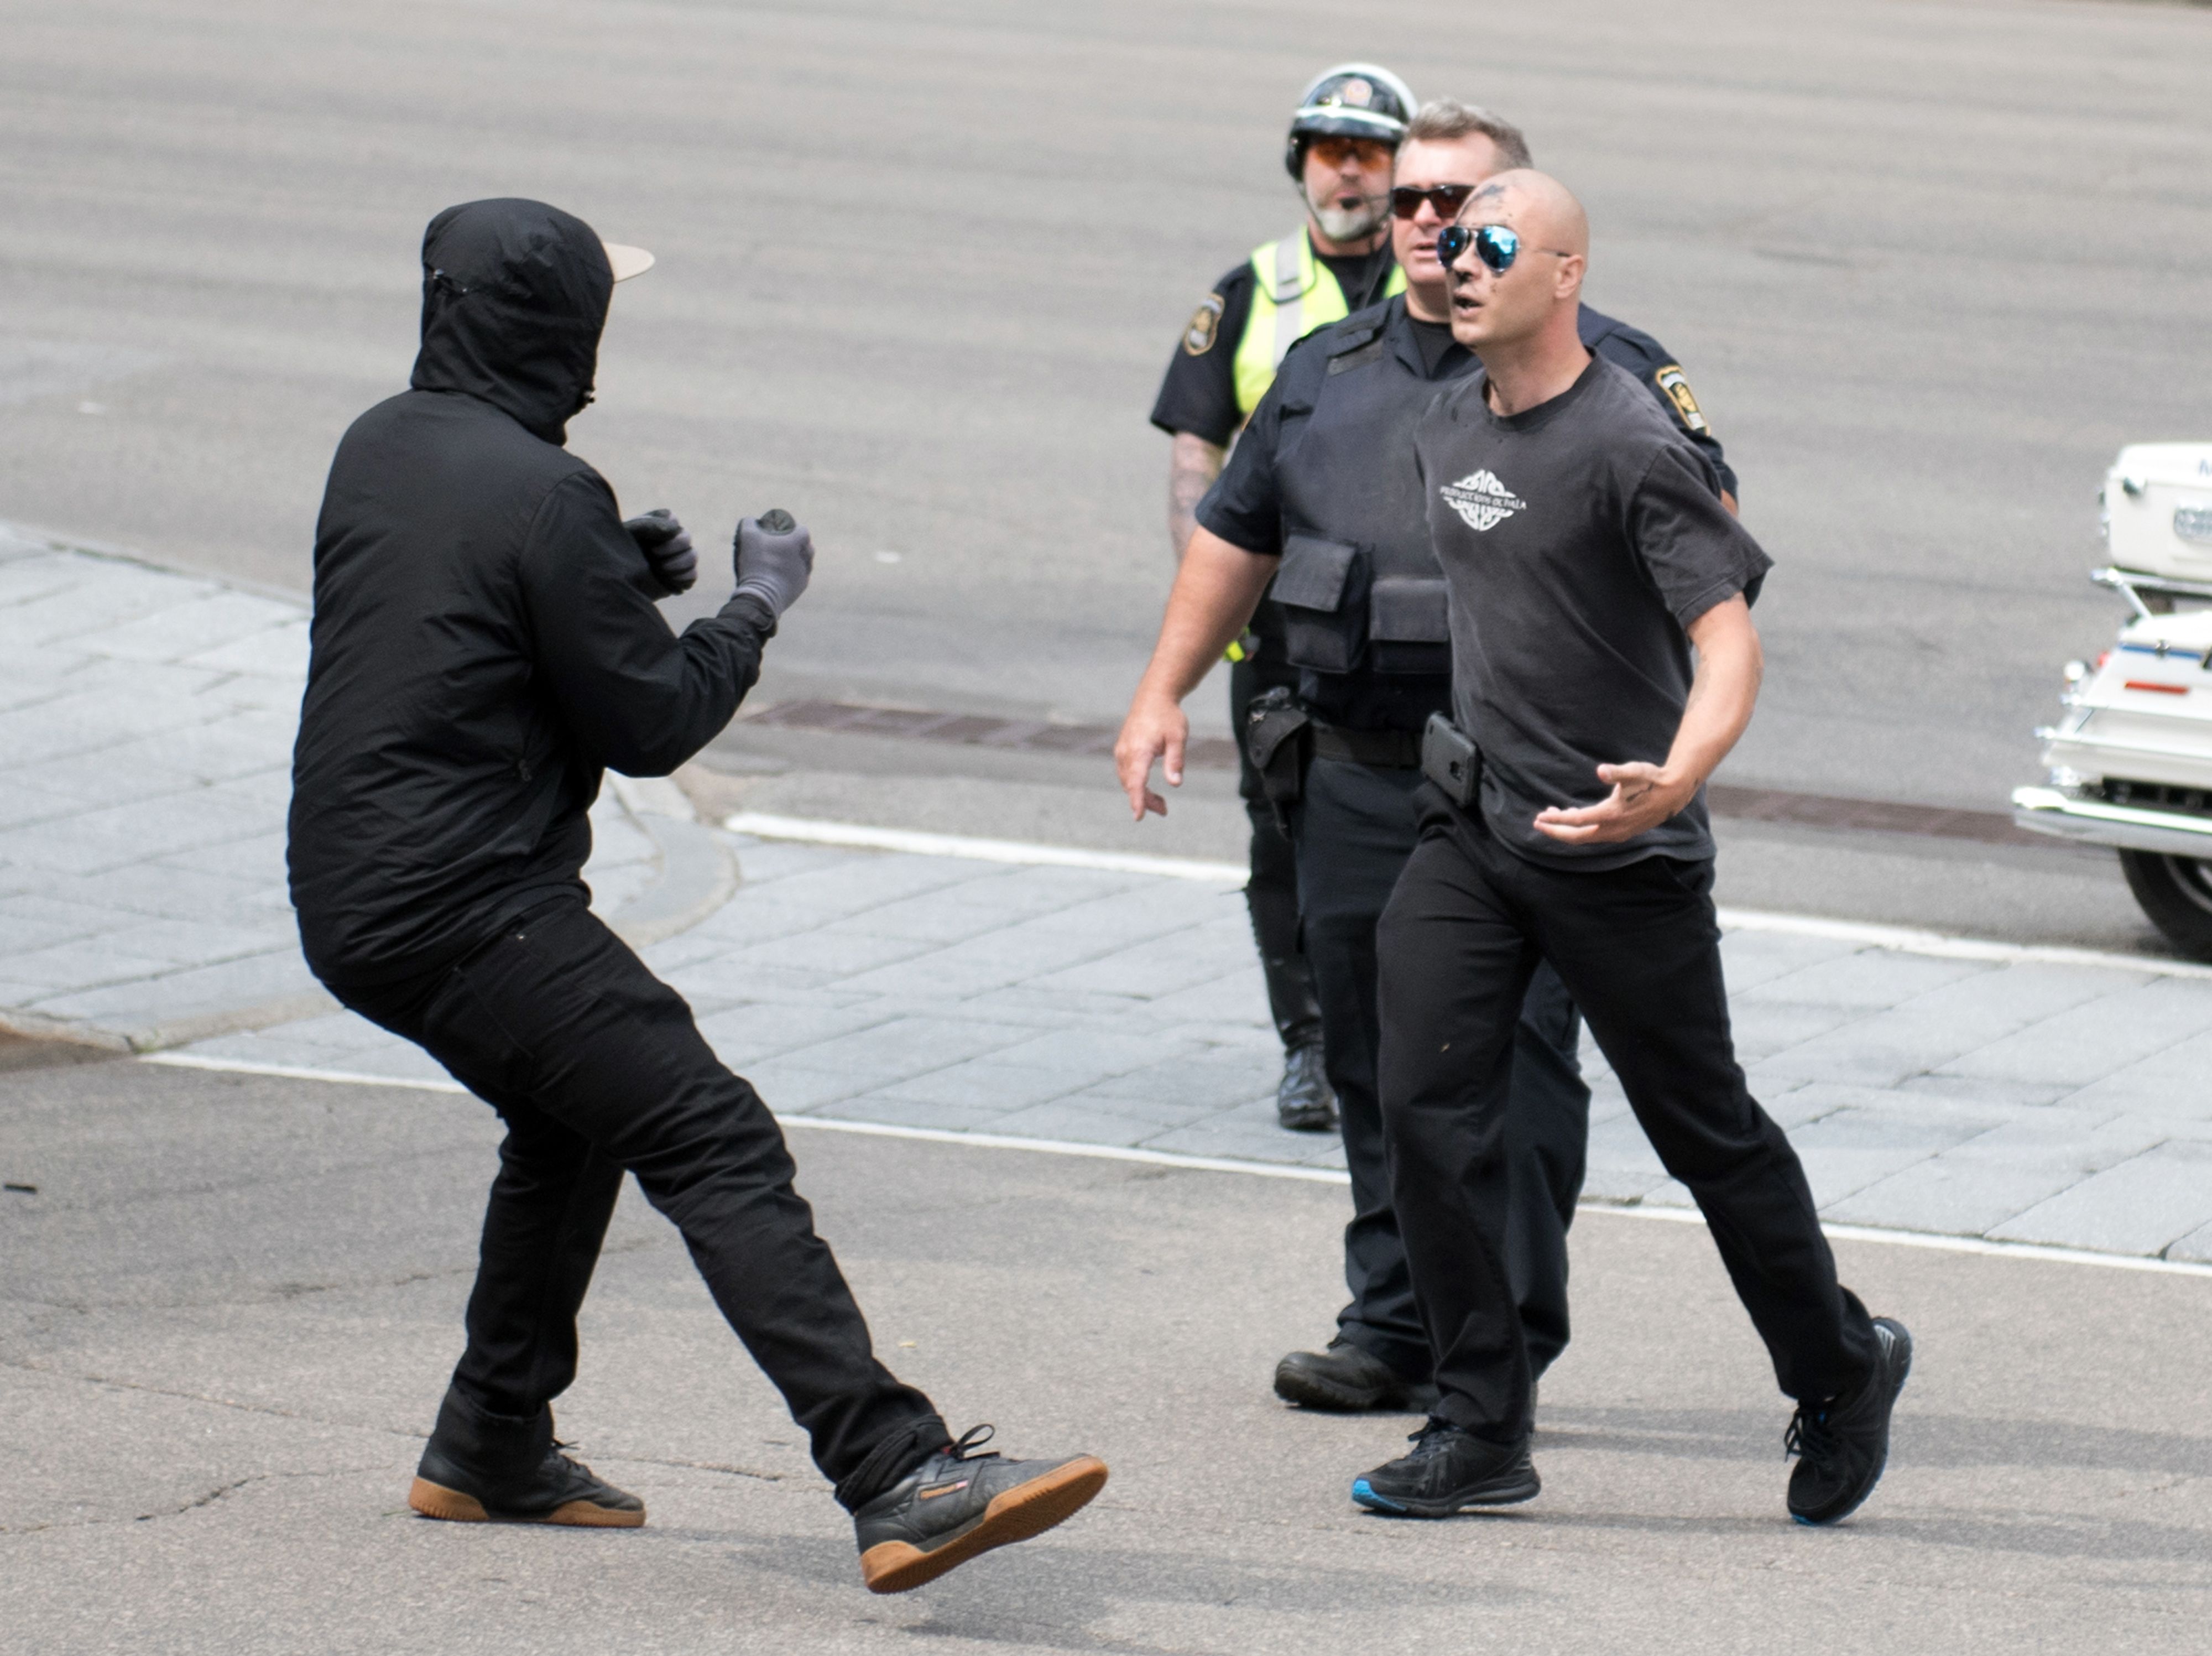 جانب من الاشتباكات بين أحد المتظاهرين وأحد عناصر الشرطة الكندية